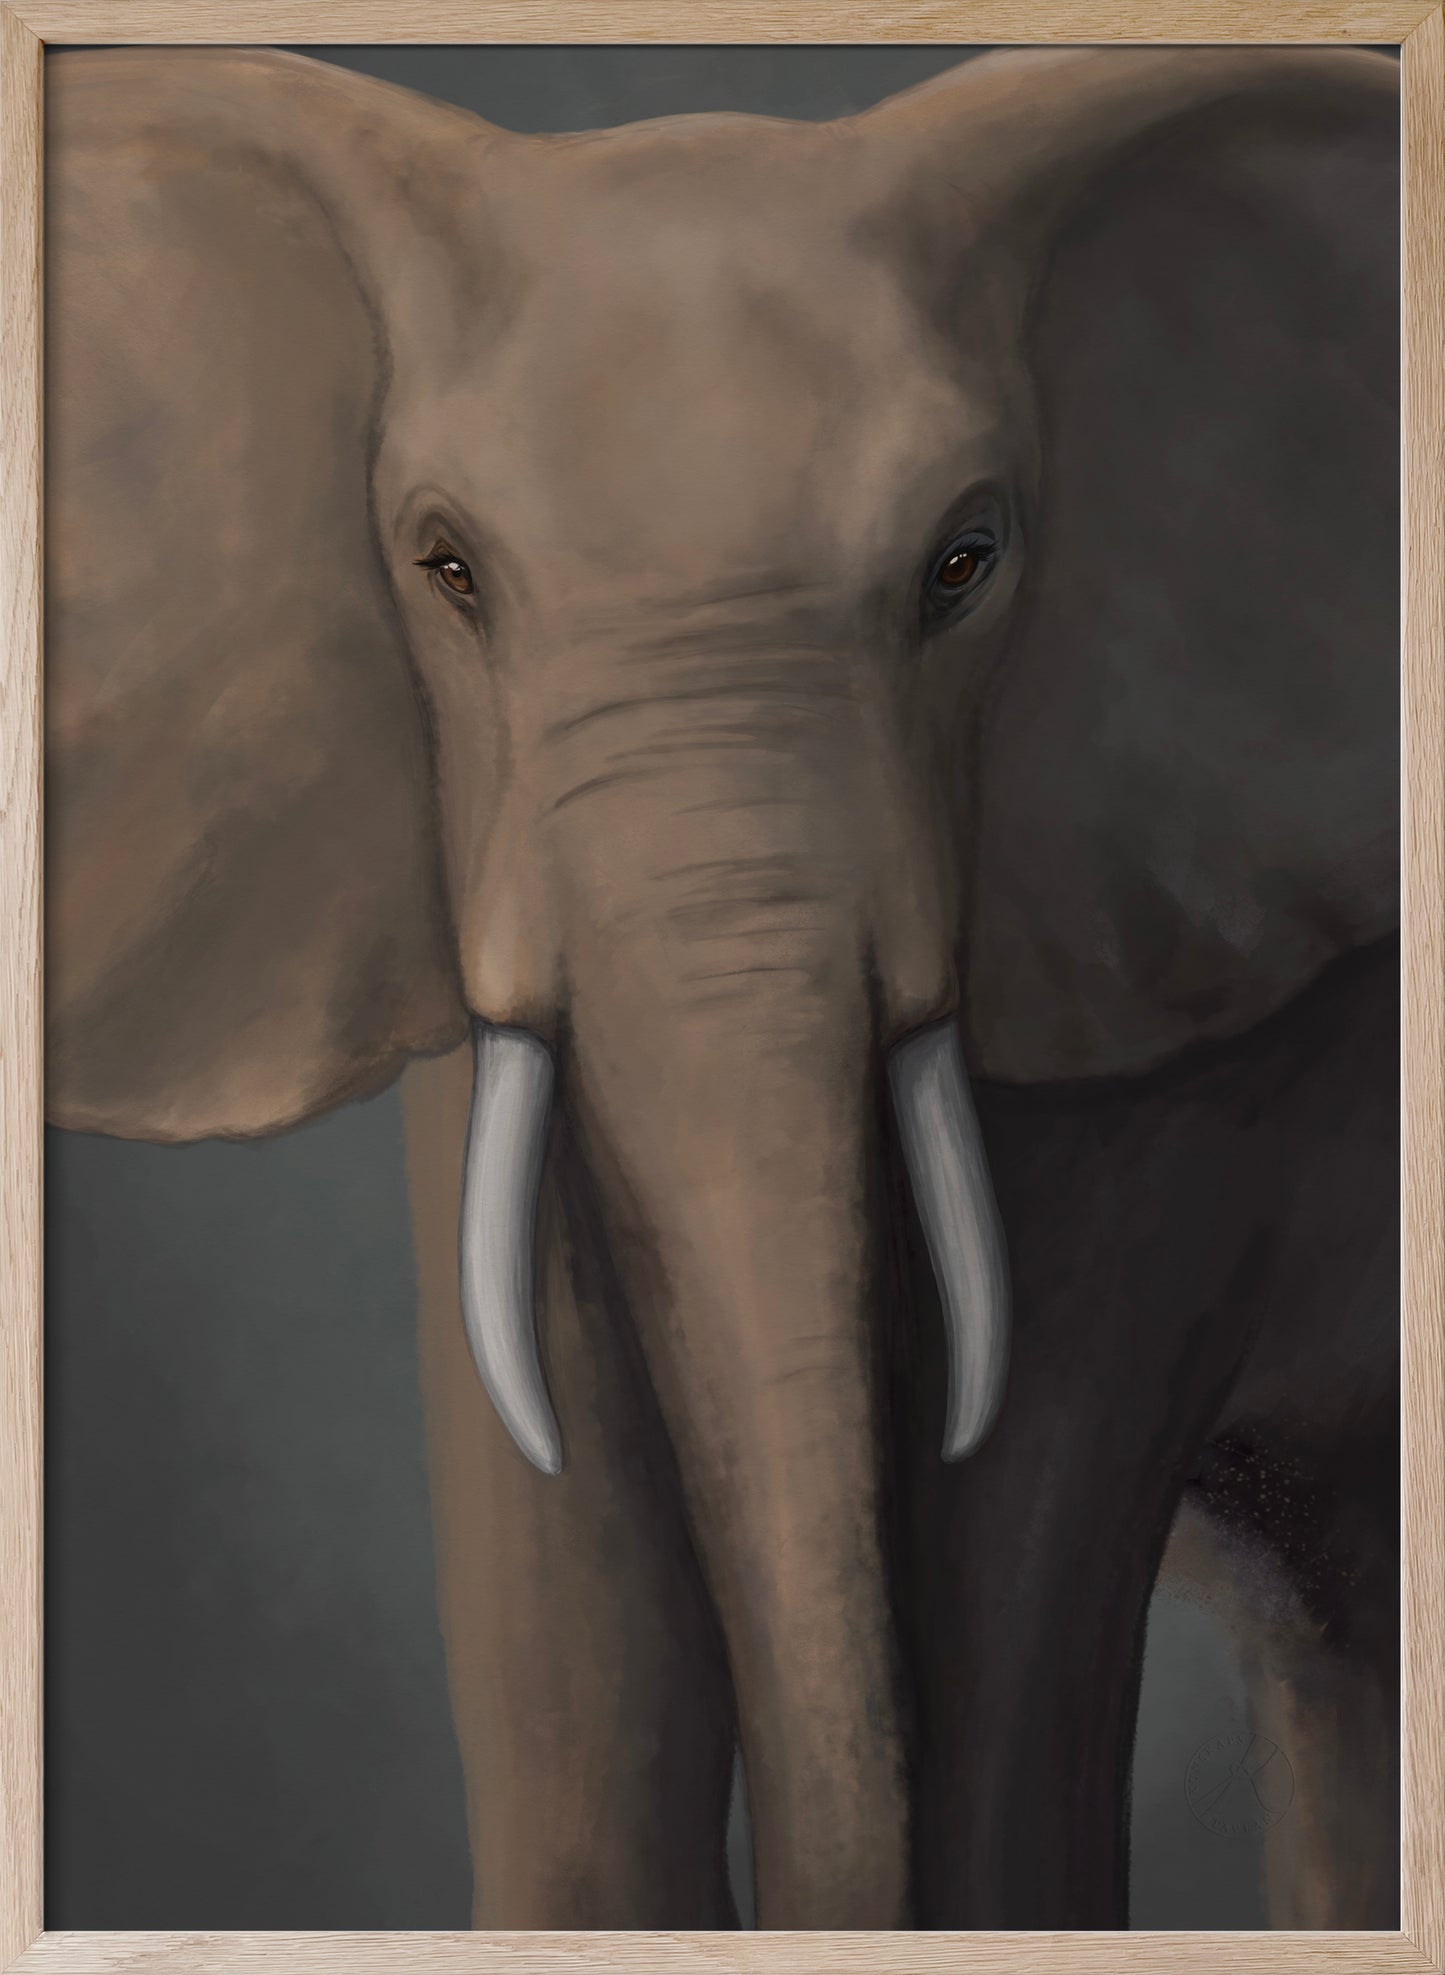 Afrikanska skogselefanten - I samarbete med WWF - Poster